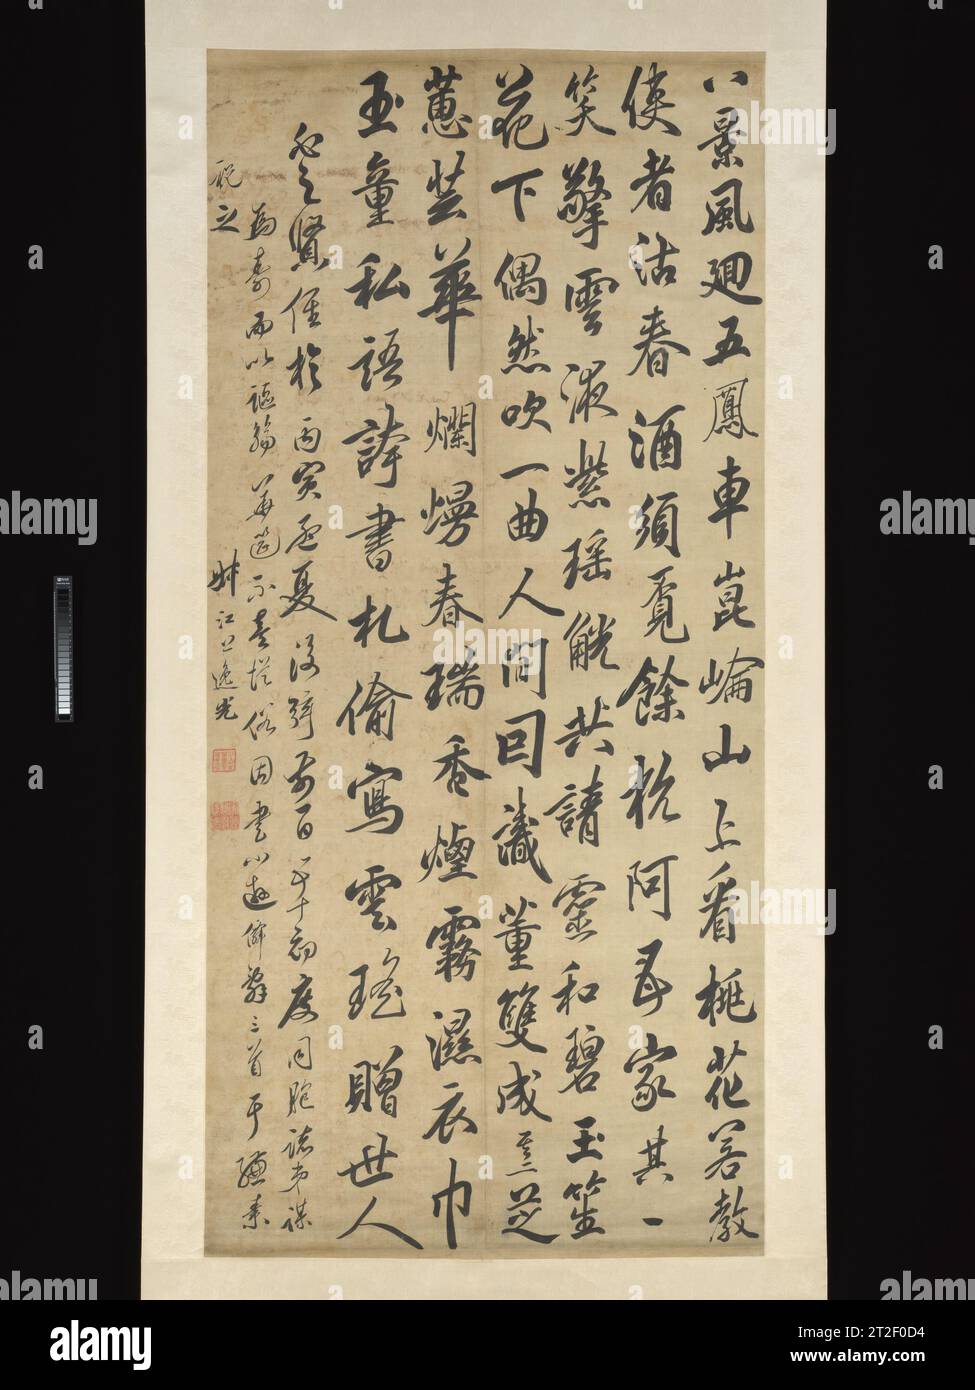 Transkription von drei von Cao Tangs „kleineren wandernden unsterblichen Gedichten“ da Chongguang Chinese 1686 da Chongguang gehörte zu einer Gruppe von Kalligraphen aus dem späten 17. Jahrhundert, die sich in der performativen Kunst der großformatigen Kalligraphie im hängenden Scrollformat hervorragend auszeichneten. Eine solche Kalligraphie wurde oft in Gruppen geschrieben, die sowohl in Performance- als auch in kalligraphischer Form zu Panache ermutigten. Hier transkribiert da Chongguang drei antike Gedichte in dicker, dunkler Tinte auf einem großen Stück Satin, wobei strategische Ungleichgewichte und verschiedene Charakterformen verwendet werden, um seiner Performance individuelles Flair zu verleihen. Mehr anzeigen. T Stockfoto